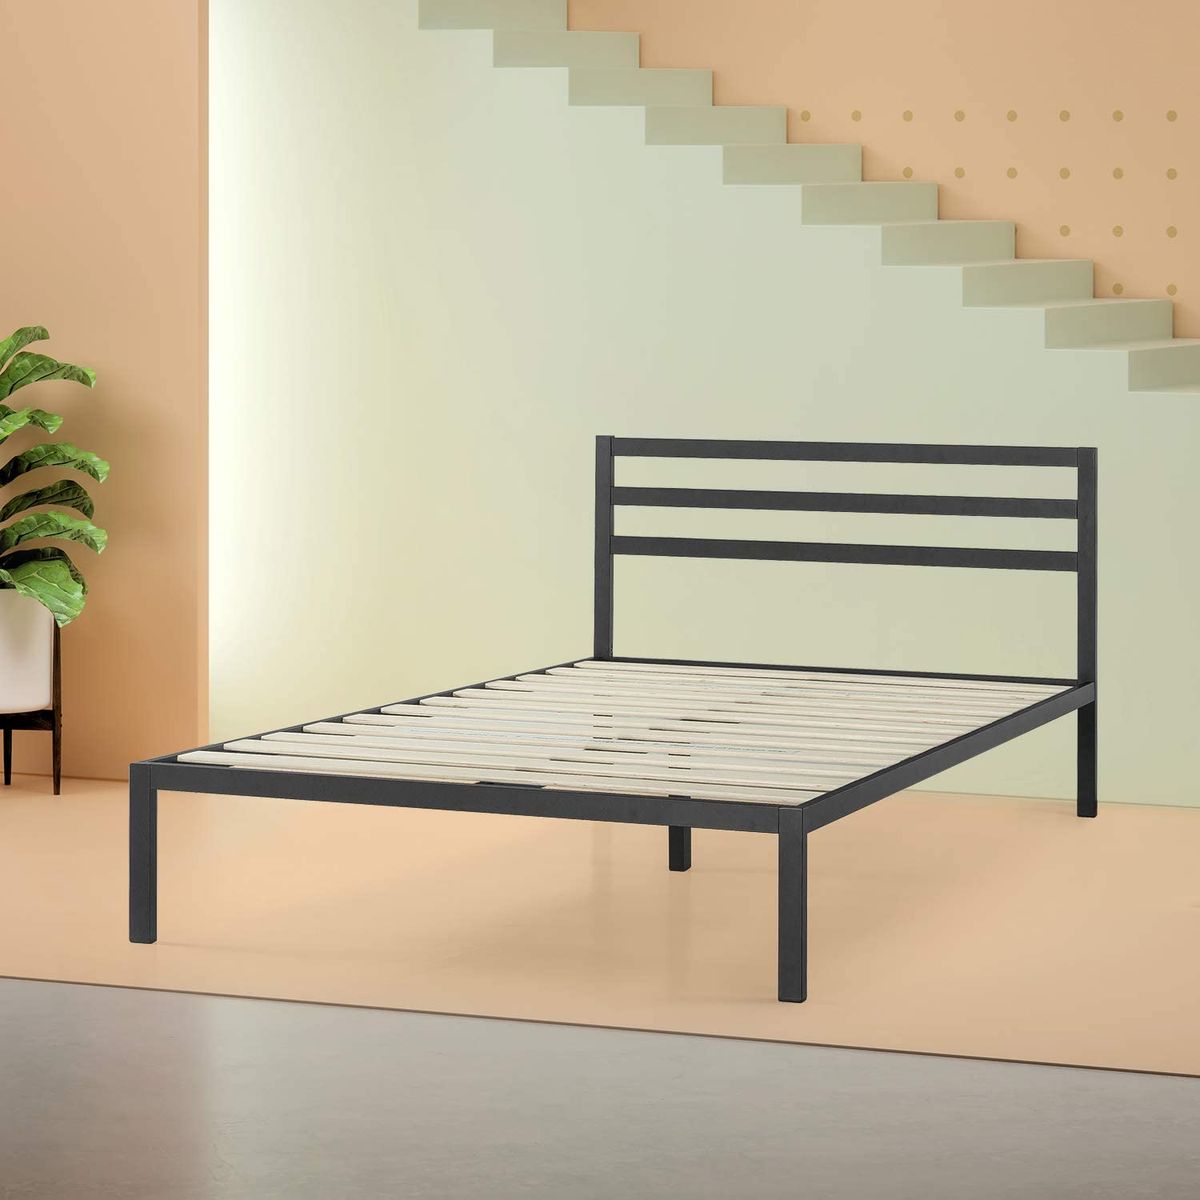 19 Best Metal Bed Frames 2020 The, Metal Bed Frame Assembly